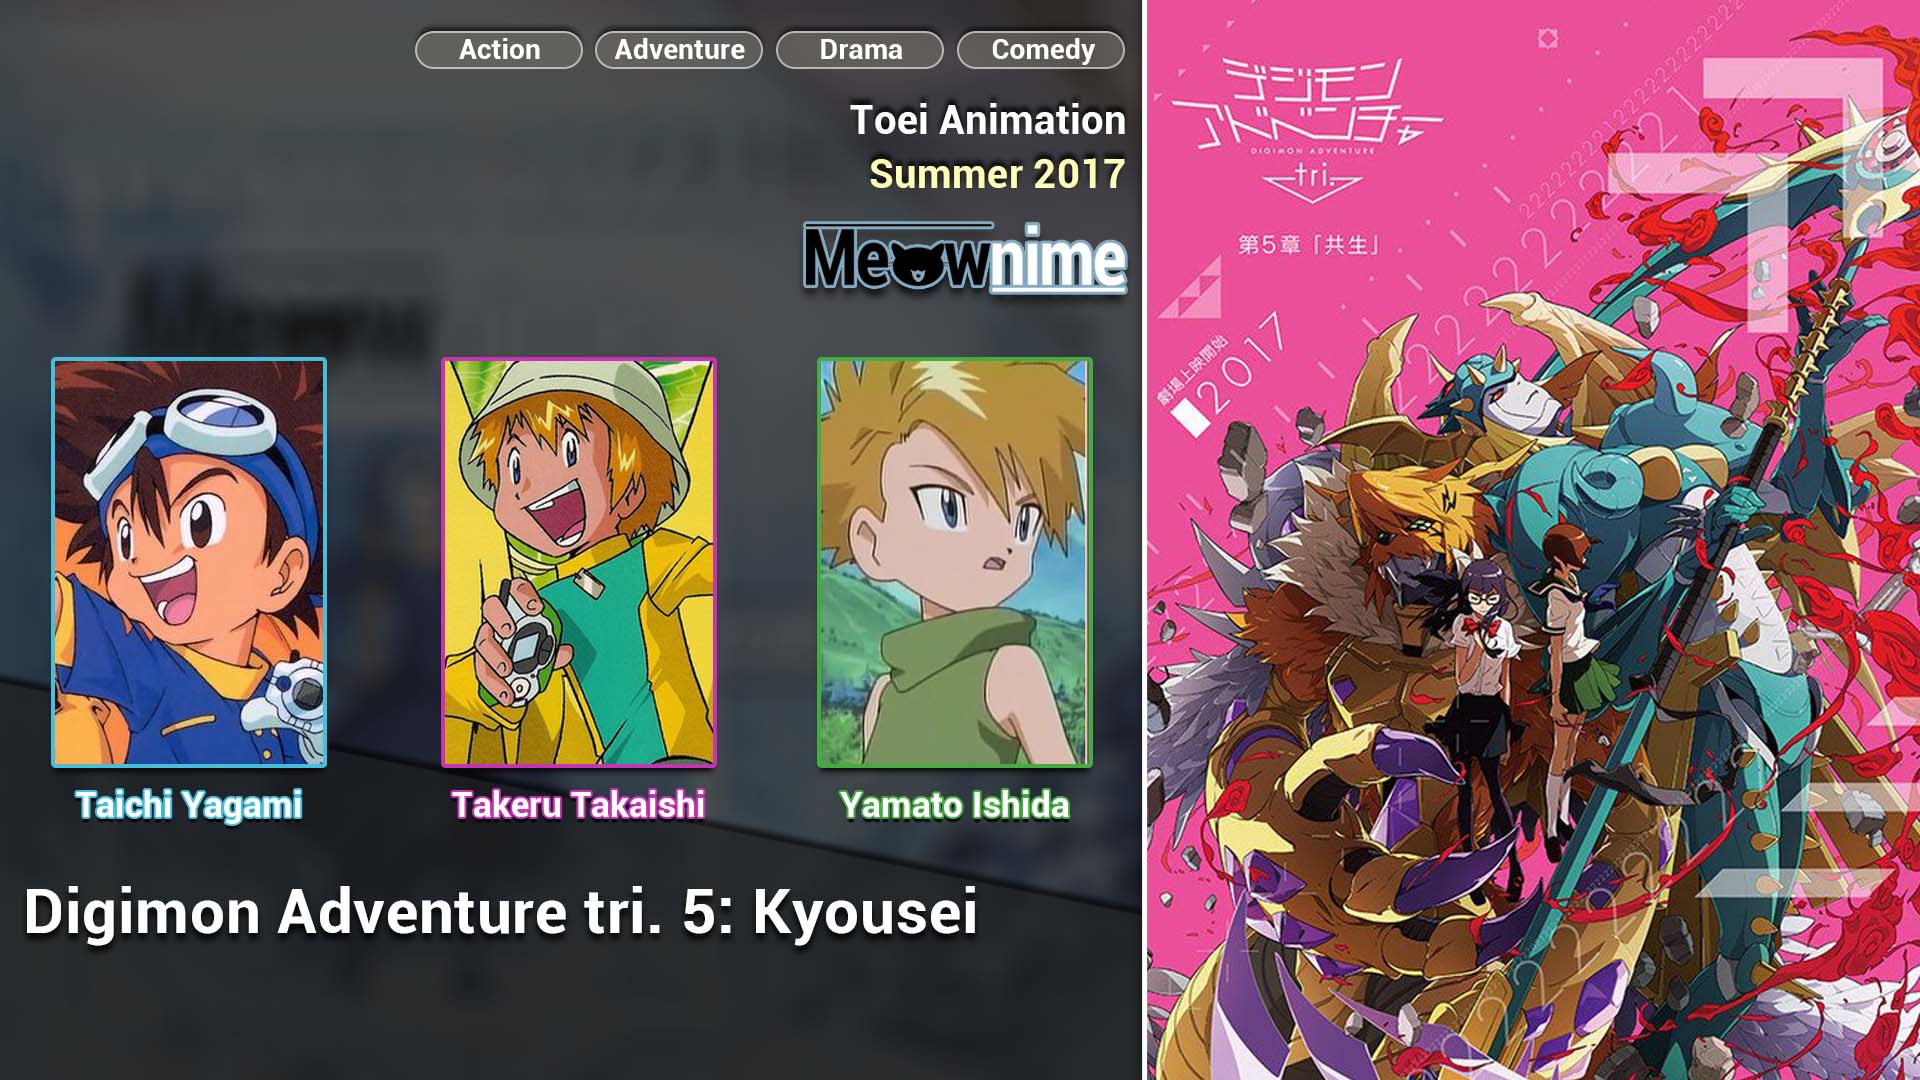 Digimon Adventure tri. 5 Kyousei